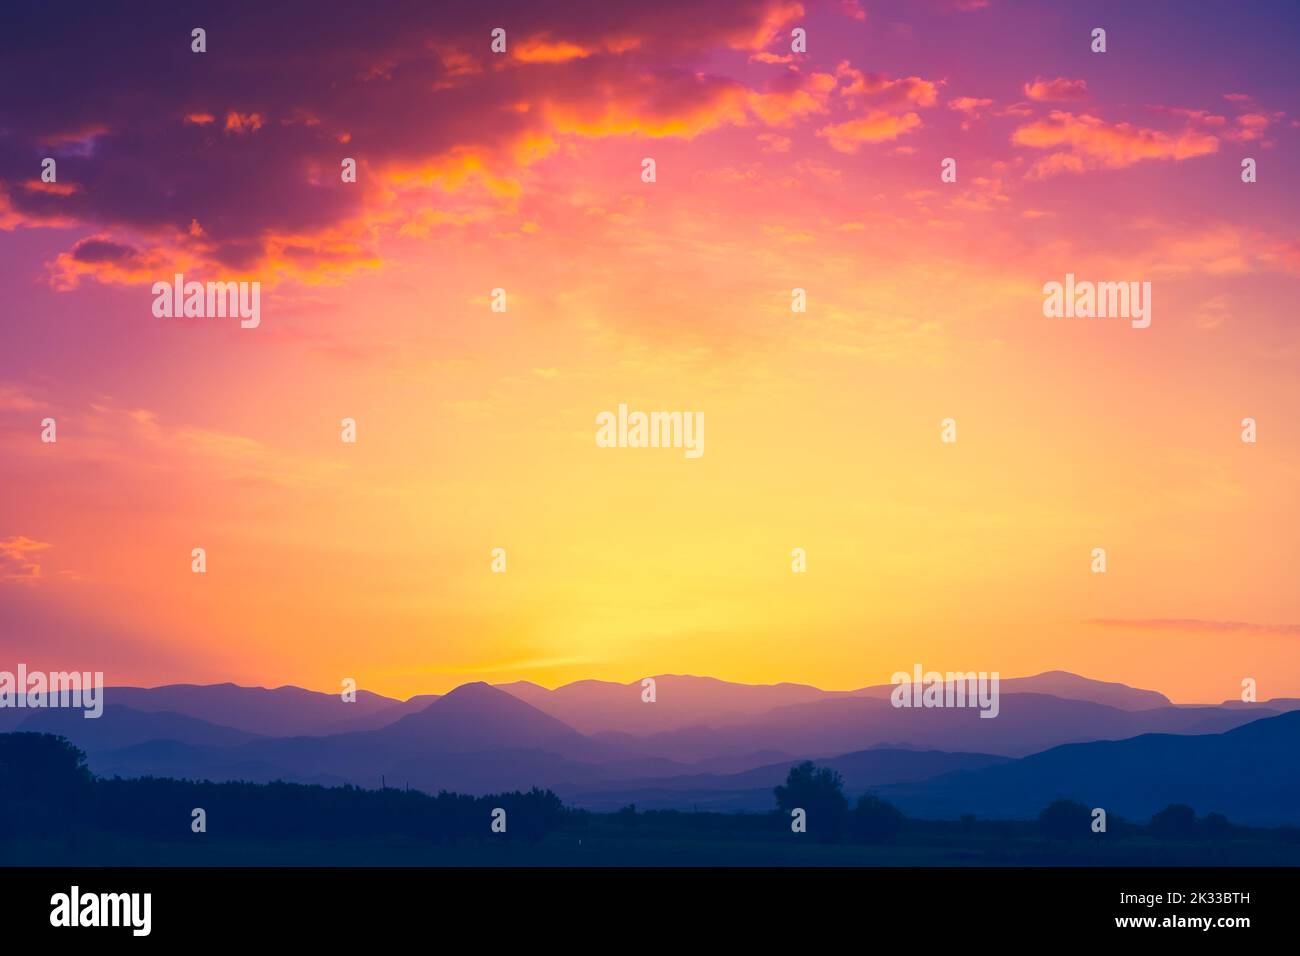 Schöne Bergkette mit Sonnenuntergangssonne in orangefarbenem Himmel mit bunten Wolken. Atemberaubende Naturkulisse. Natürliche Textur und Hintergrund Stockfoto